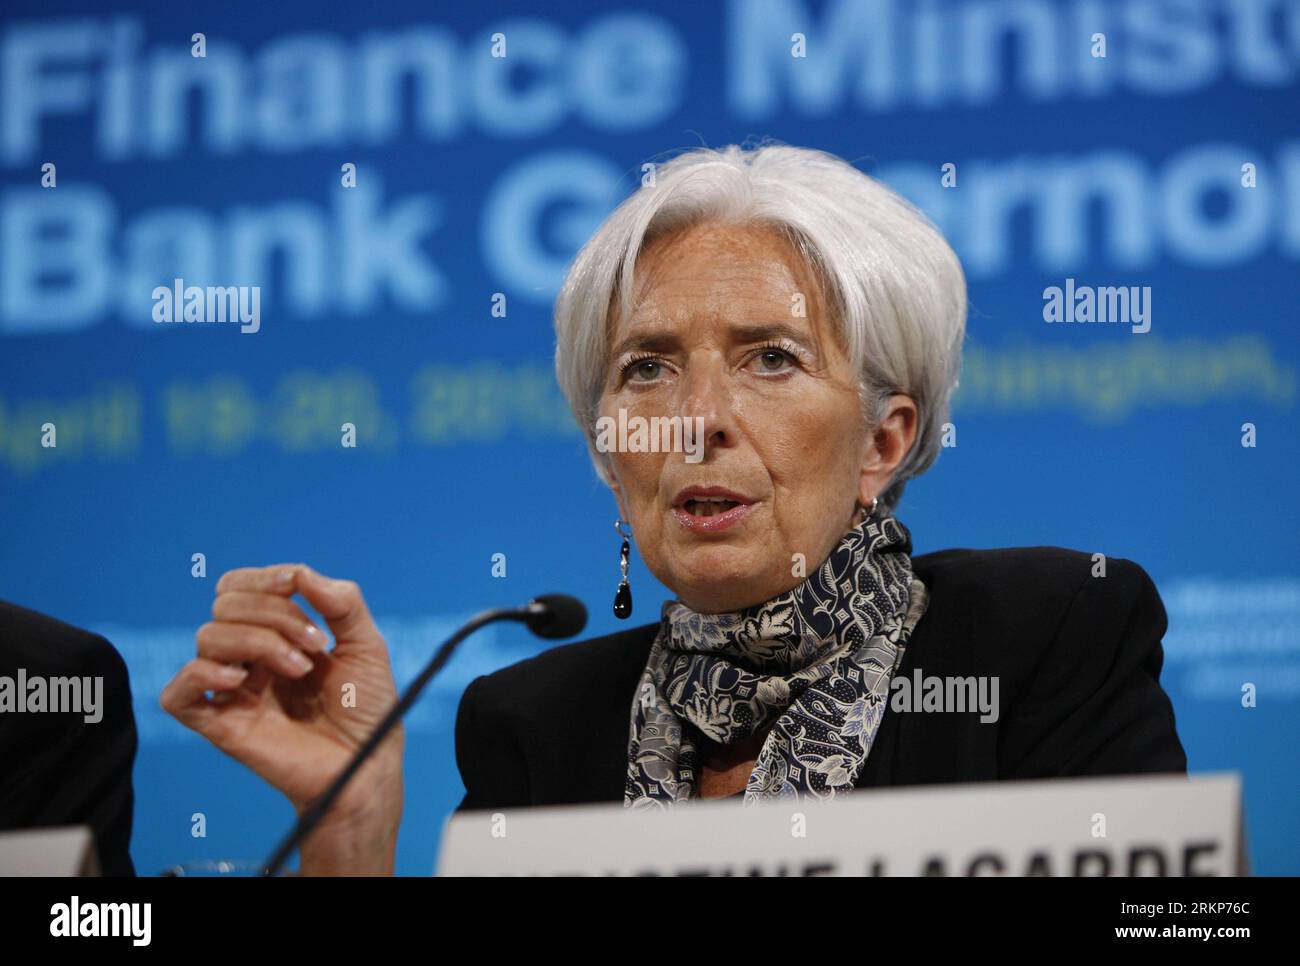 Bildnummer: 57917878 Datum: 20.04.2012 Copyright: imago/Xinhua (120421) -- WASHINGTON, aprile 21,2012 (Xinhua) -- Christine Lagarde, capo del Fondo monetario Internazionale (FMI), parla durante una conferenza stampa a Washington, negli Stati Uniti, il 20 aprile 2012. Le principali economie industriali ed emergenti del G20 hanno accettato di potenziare la capacità creditizia del FMI con impegni che aumenterebbero le risorse dell'istituzione di oltre 430 miliardi di dollari, una mossa che quasi raddoppierà il potere creditizio totale del FMI. (xinhua/Fang Zhe) US-WASHINGTON-FMI-G20-RISORSE EXTRA PUBLICAT Foto Stock